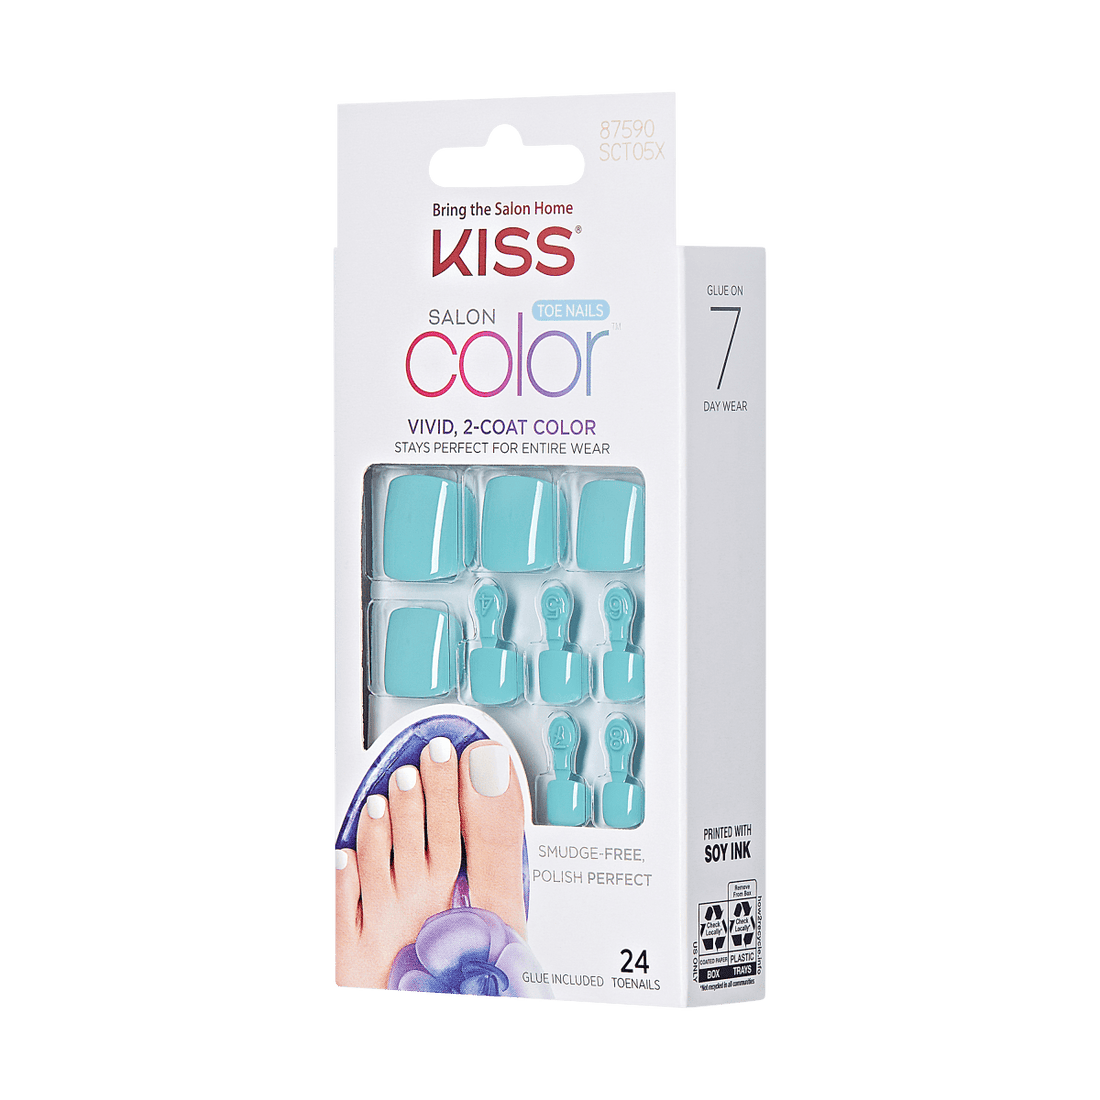 KISS Salon Color Toenails - Summer Feelings